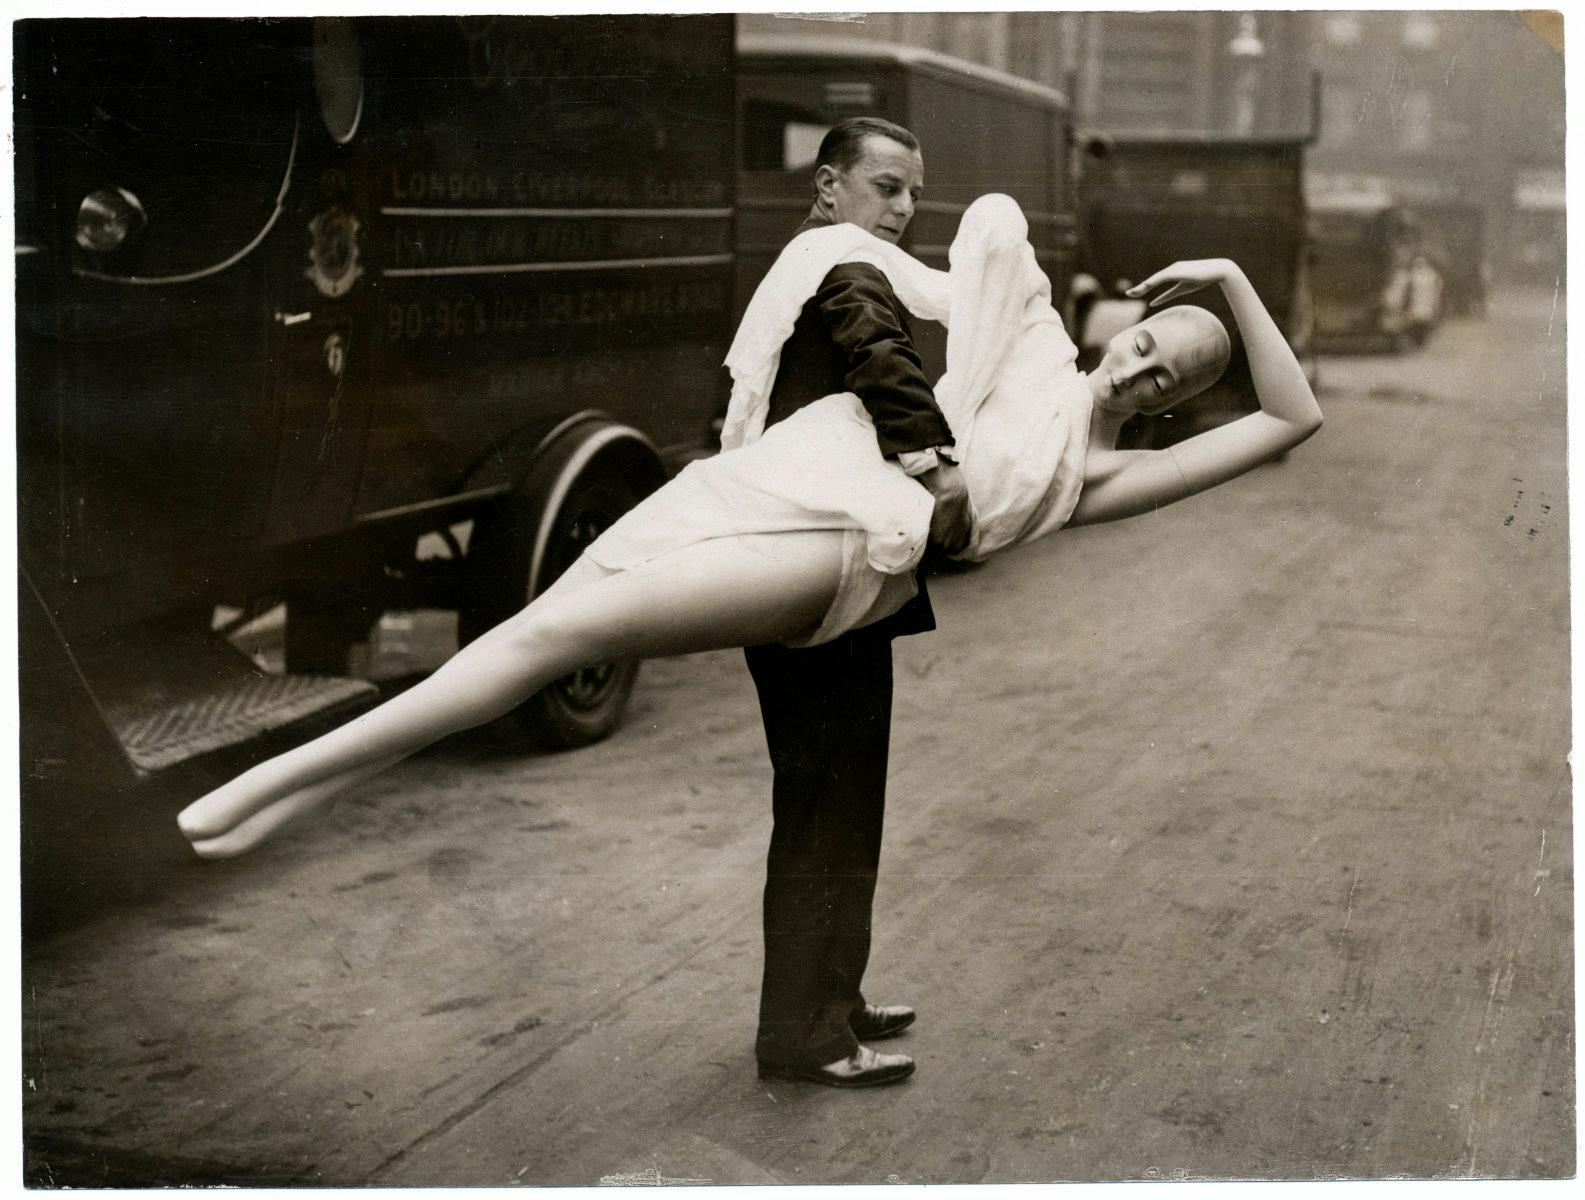 Keystone View Company / Amsab-ISG. L’enlèvement du mannequin (De ontvoering van de etalagepop / The Kidnap of the Display Dummy). 1928